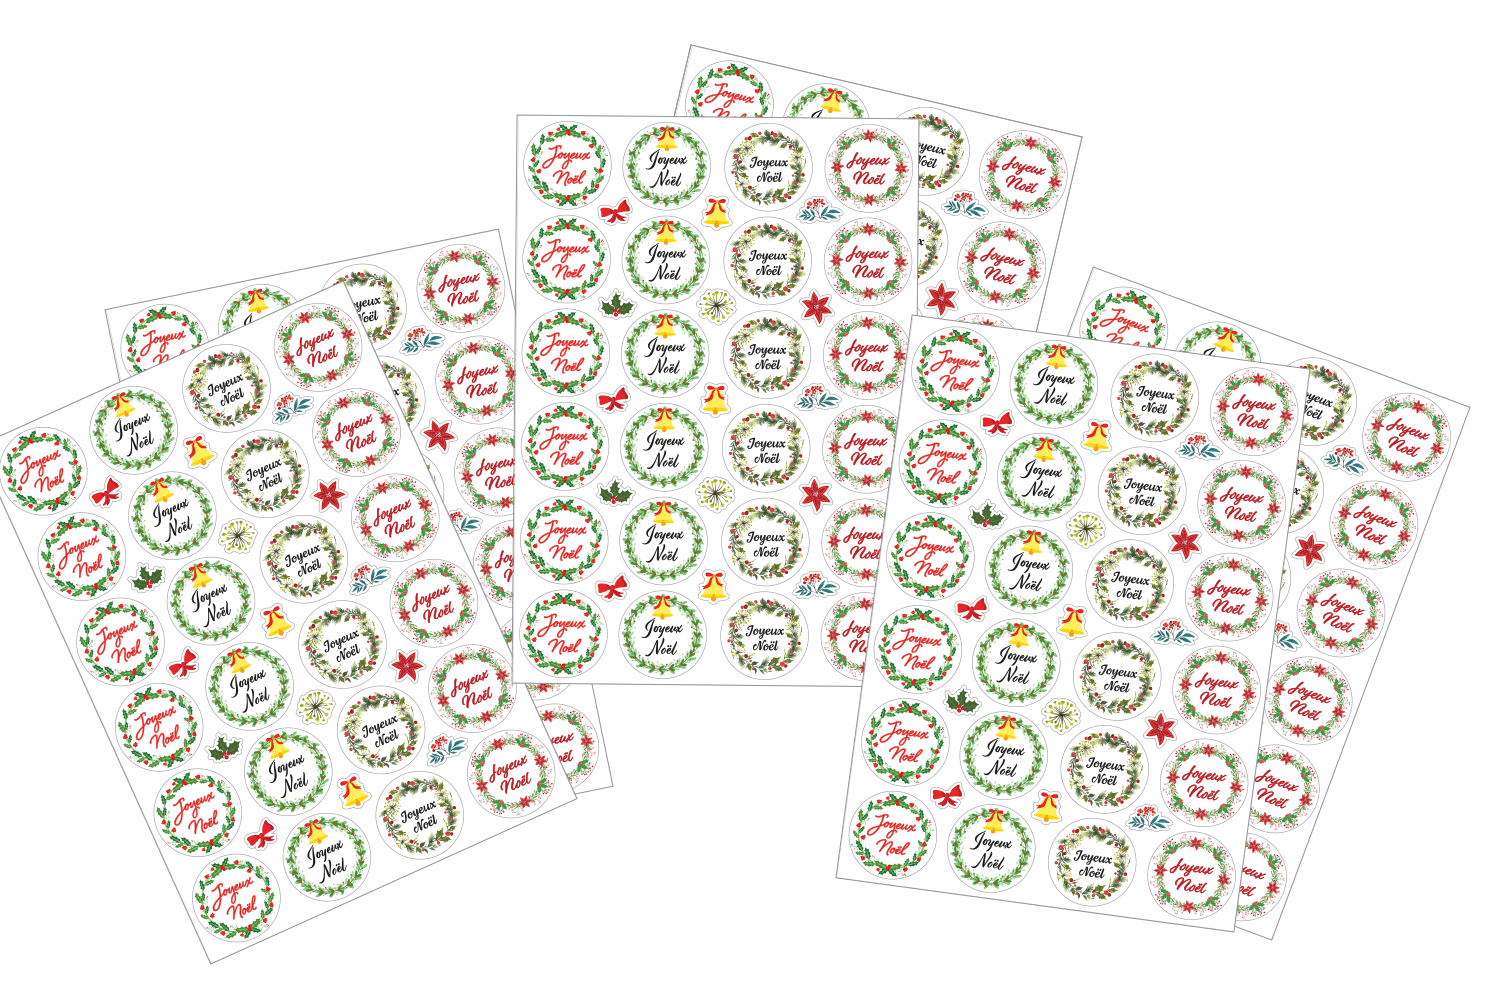 X 10 étiquettes autocollantes rondes stickers papier  joyeux noël